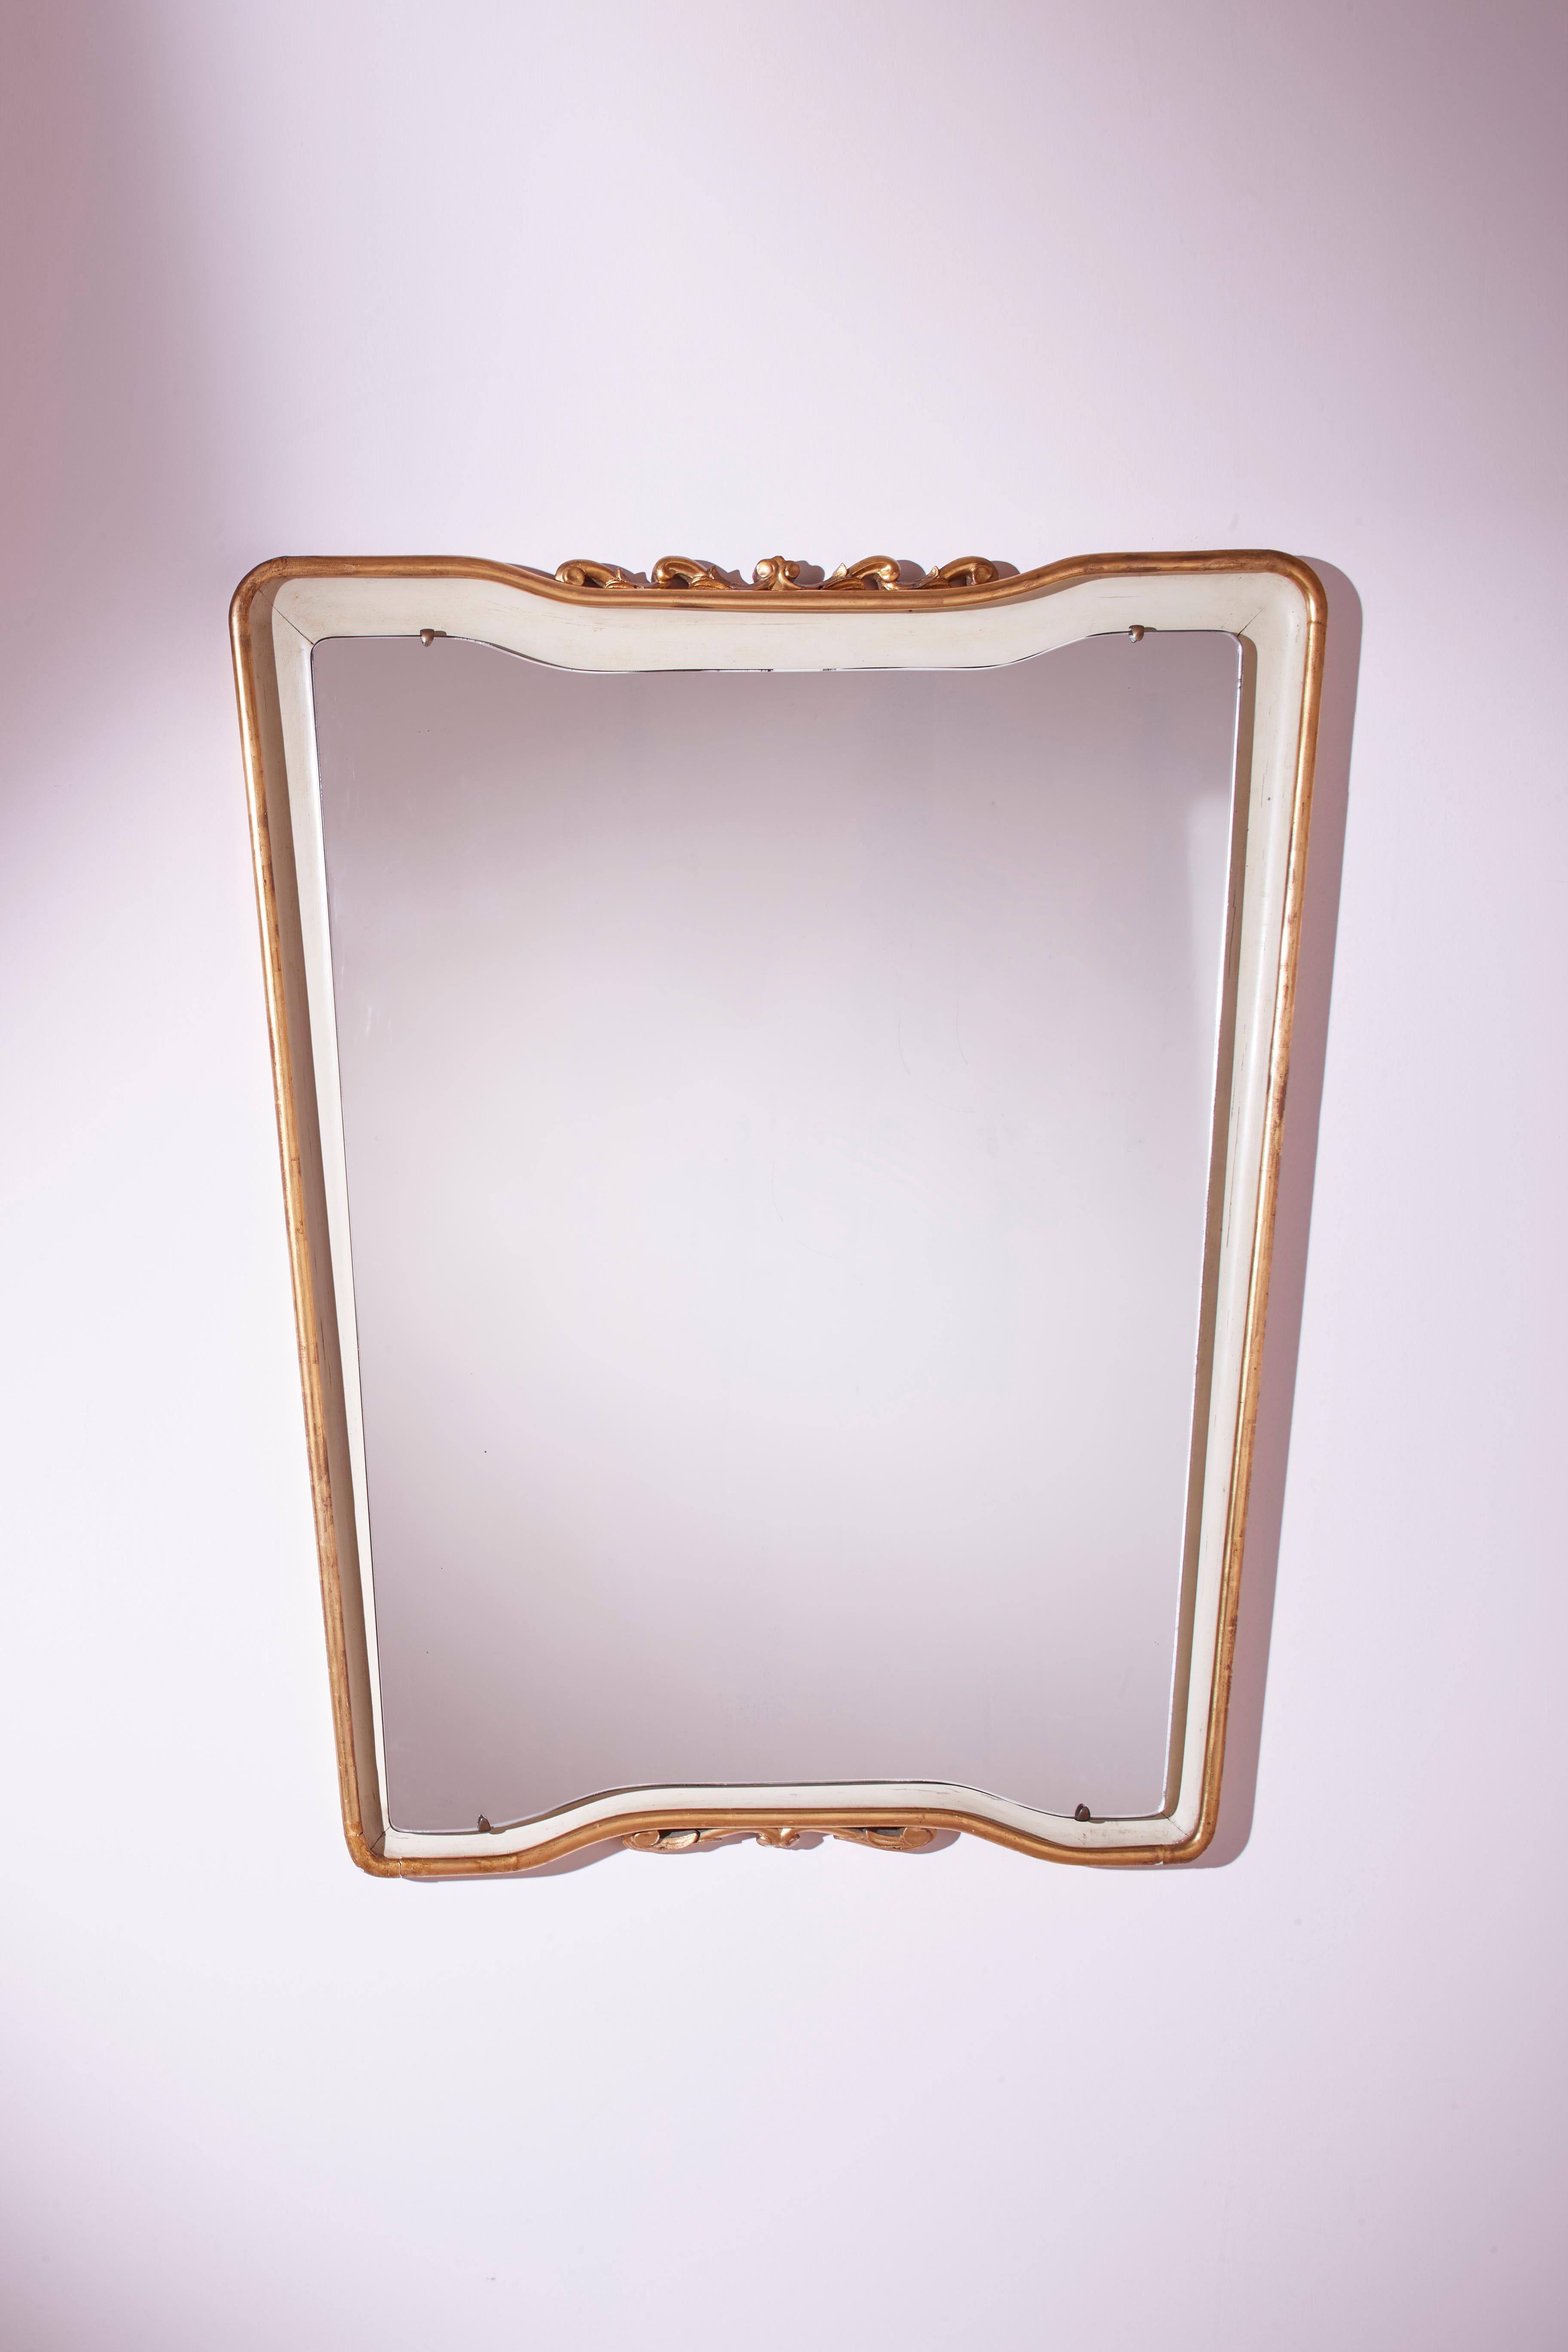 Un splendide miroir trapézoïdal au cadre laqué et doré est une authentique création italienne des années 1950, conçue par Osvaldo Borsani.

Cet impressionnant miroir en pied est composé d'une plaque originale des années 1950, rehaussée d'un cadre en